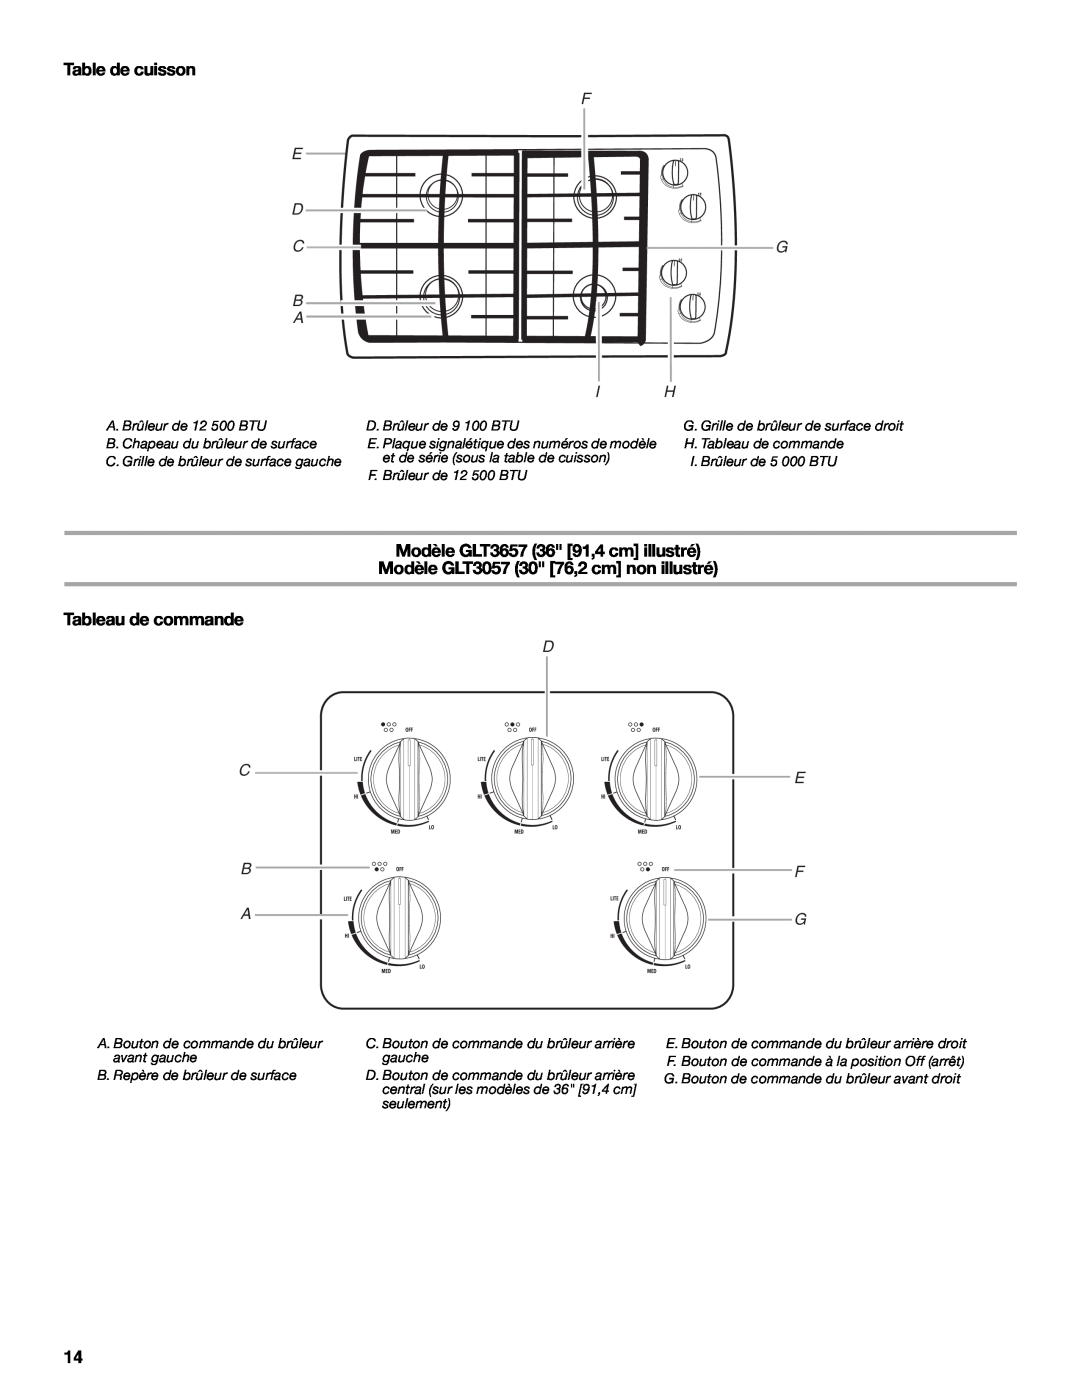 Whirlpool GLT3057RB Table de cuisson, Modèle GLT3657 36 91,4 cm illustré, Modèle GLT3057 30 76,2 cm non illustré, C B A 